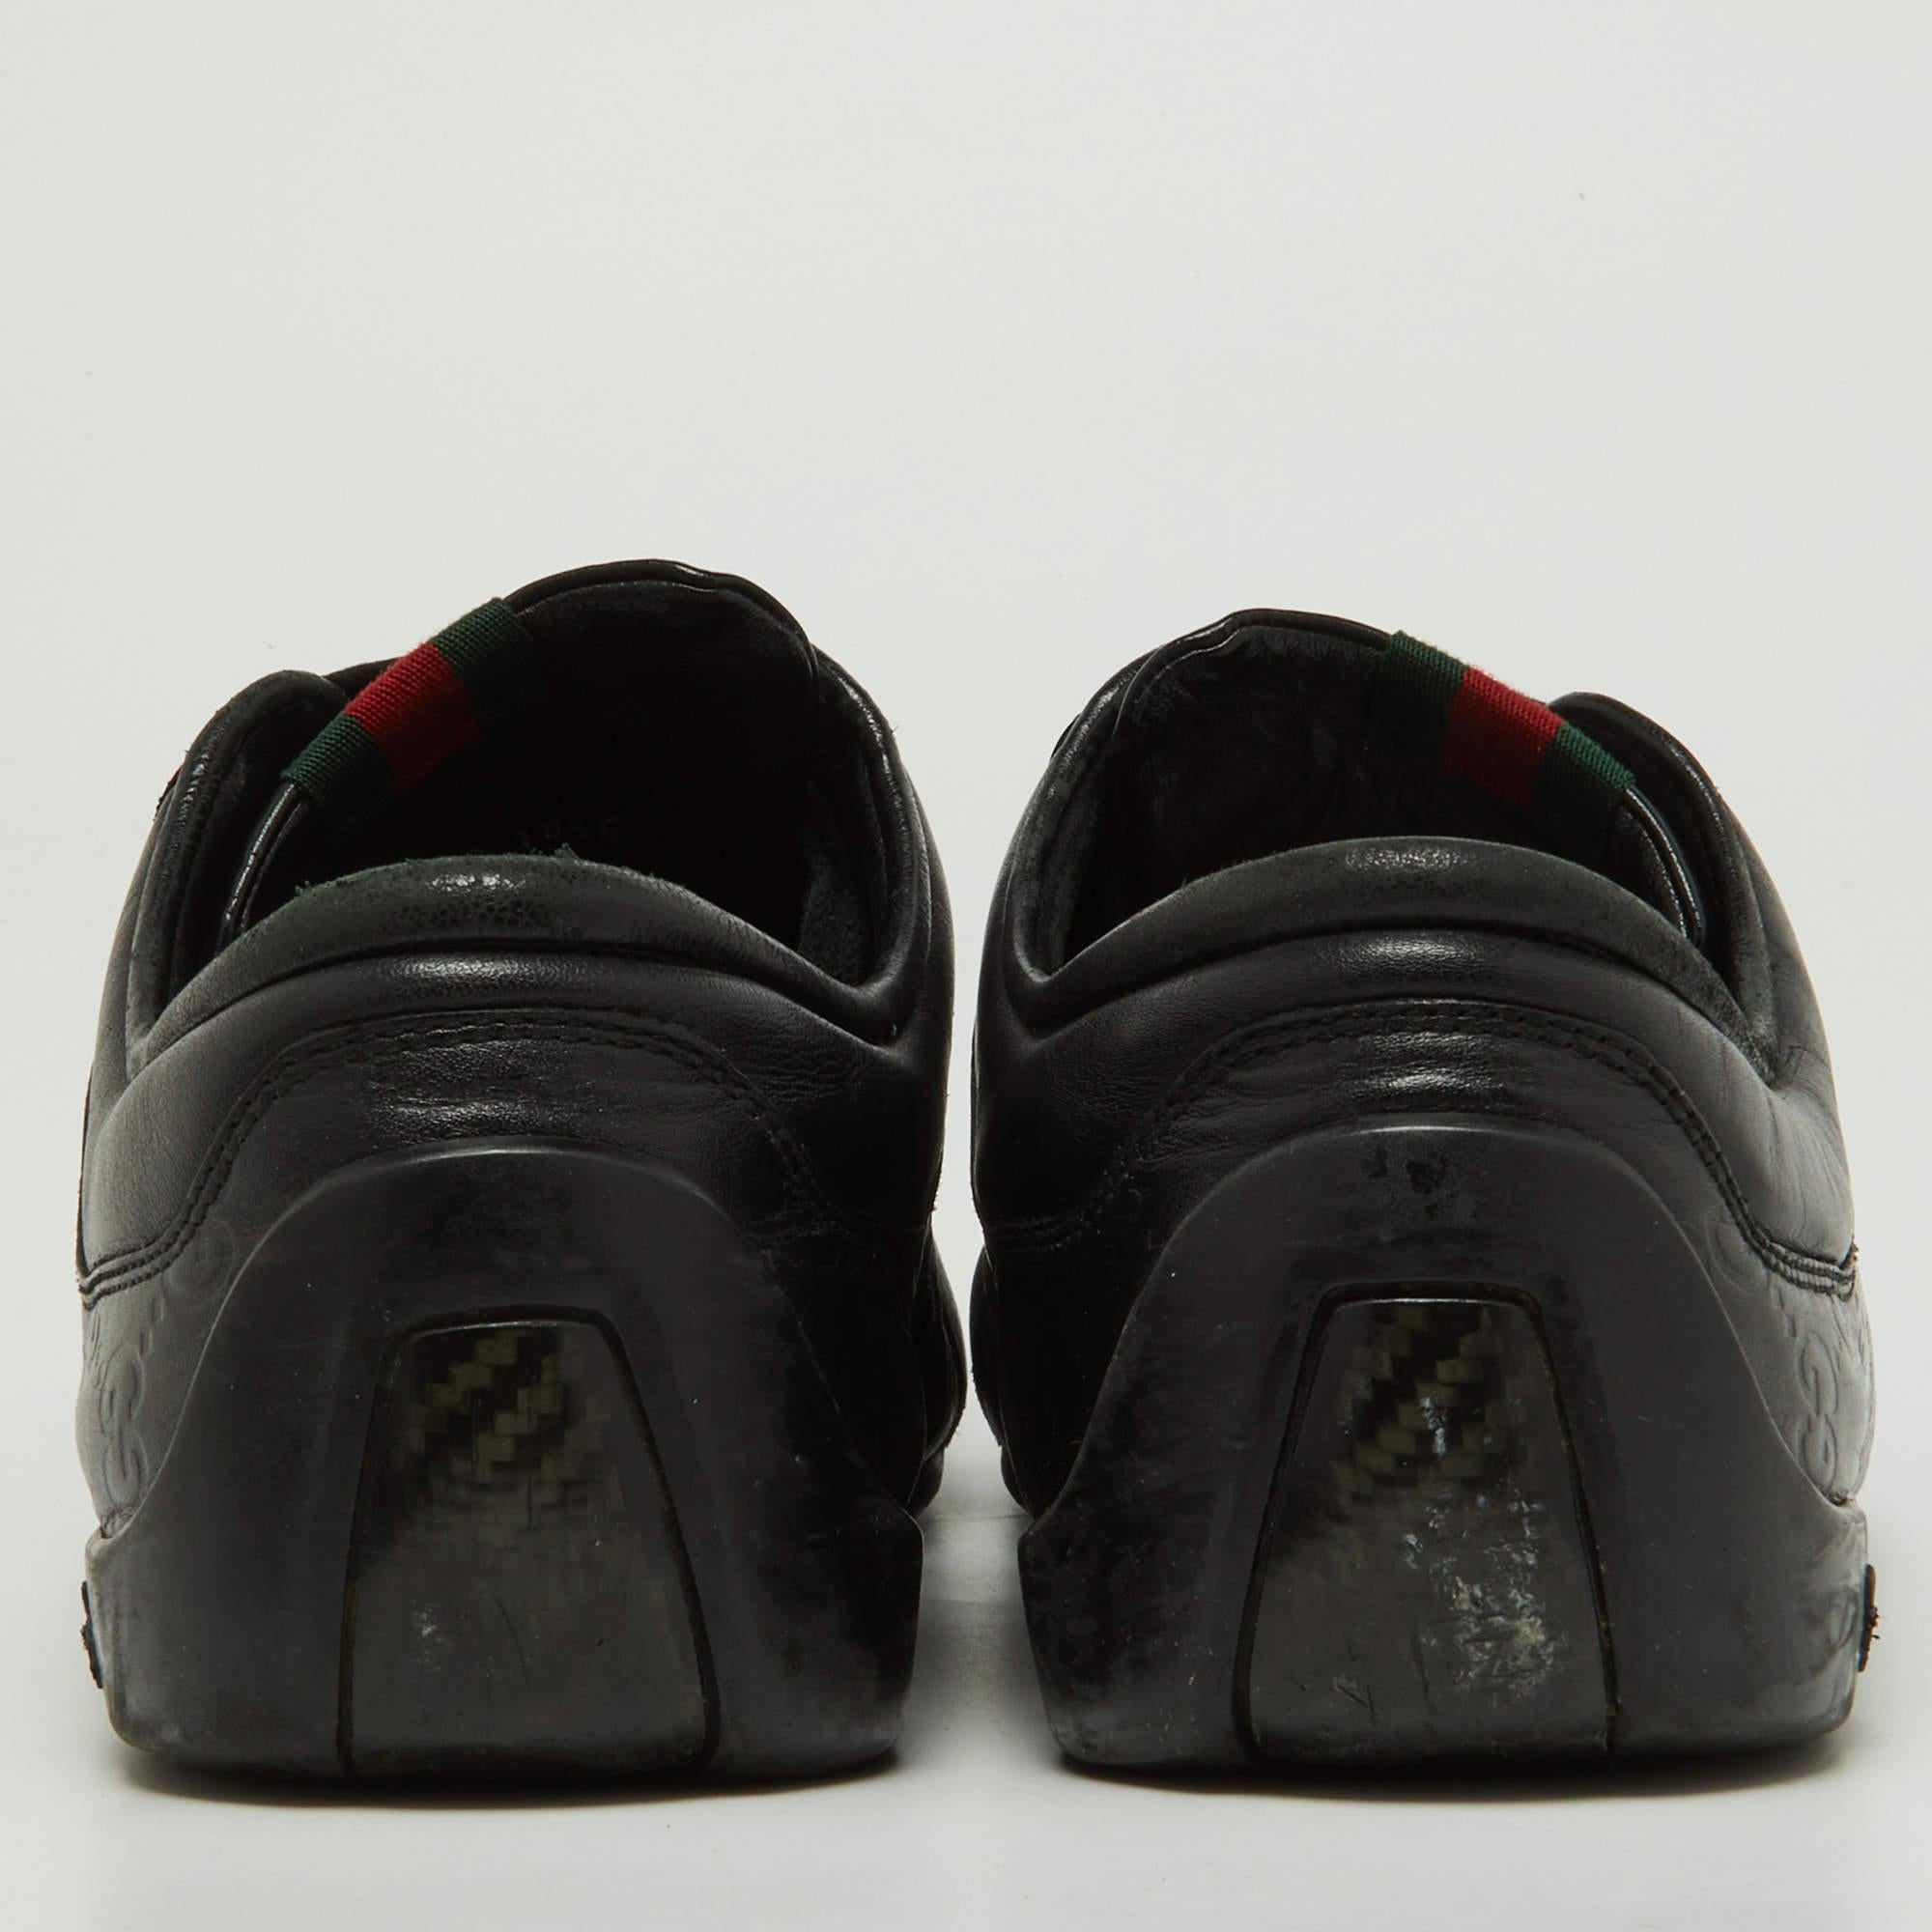 Gucci Black Guccissima Leather Low Top Sneakers Size 44.5 In Fair Condition For Sale In Dubai, Al Qouz 2